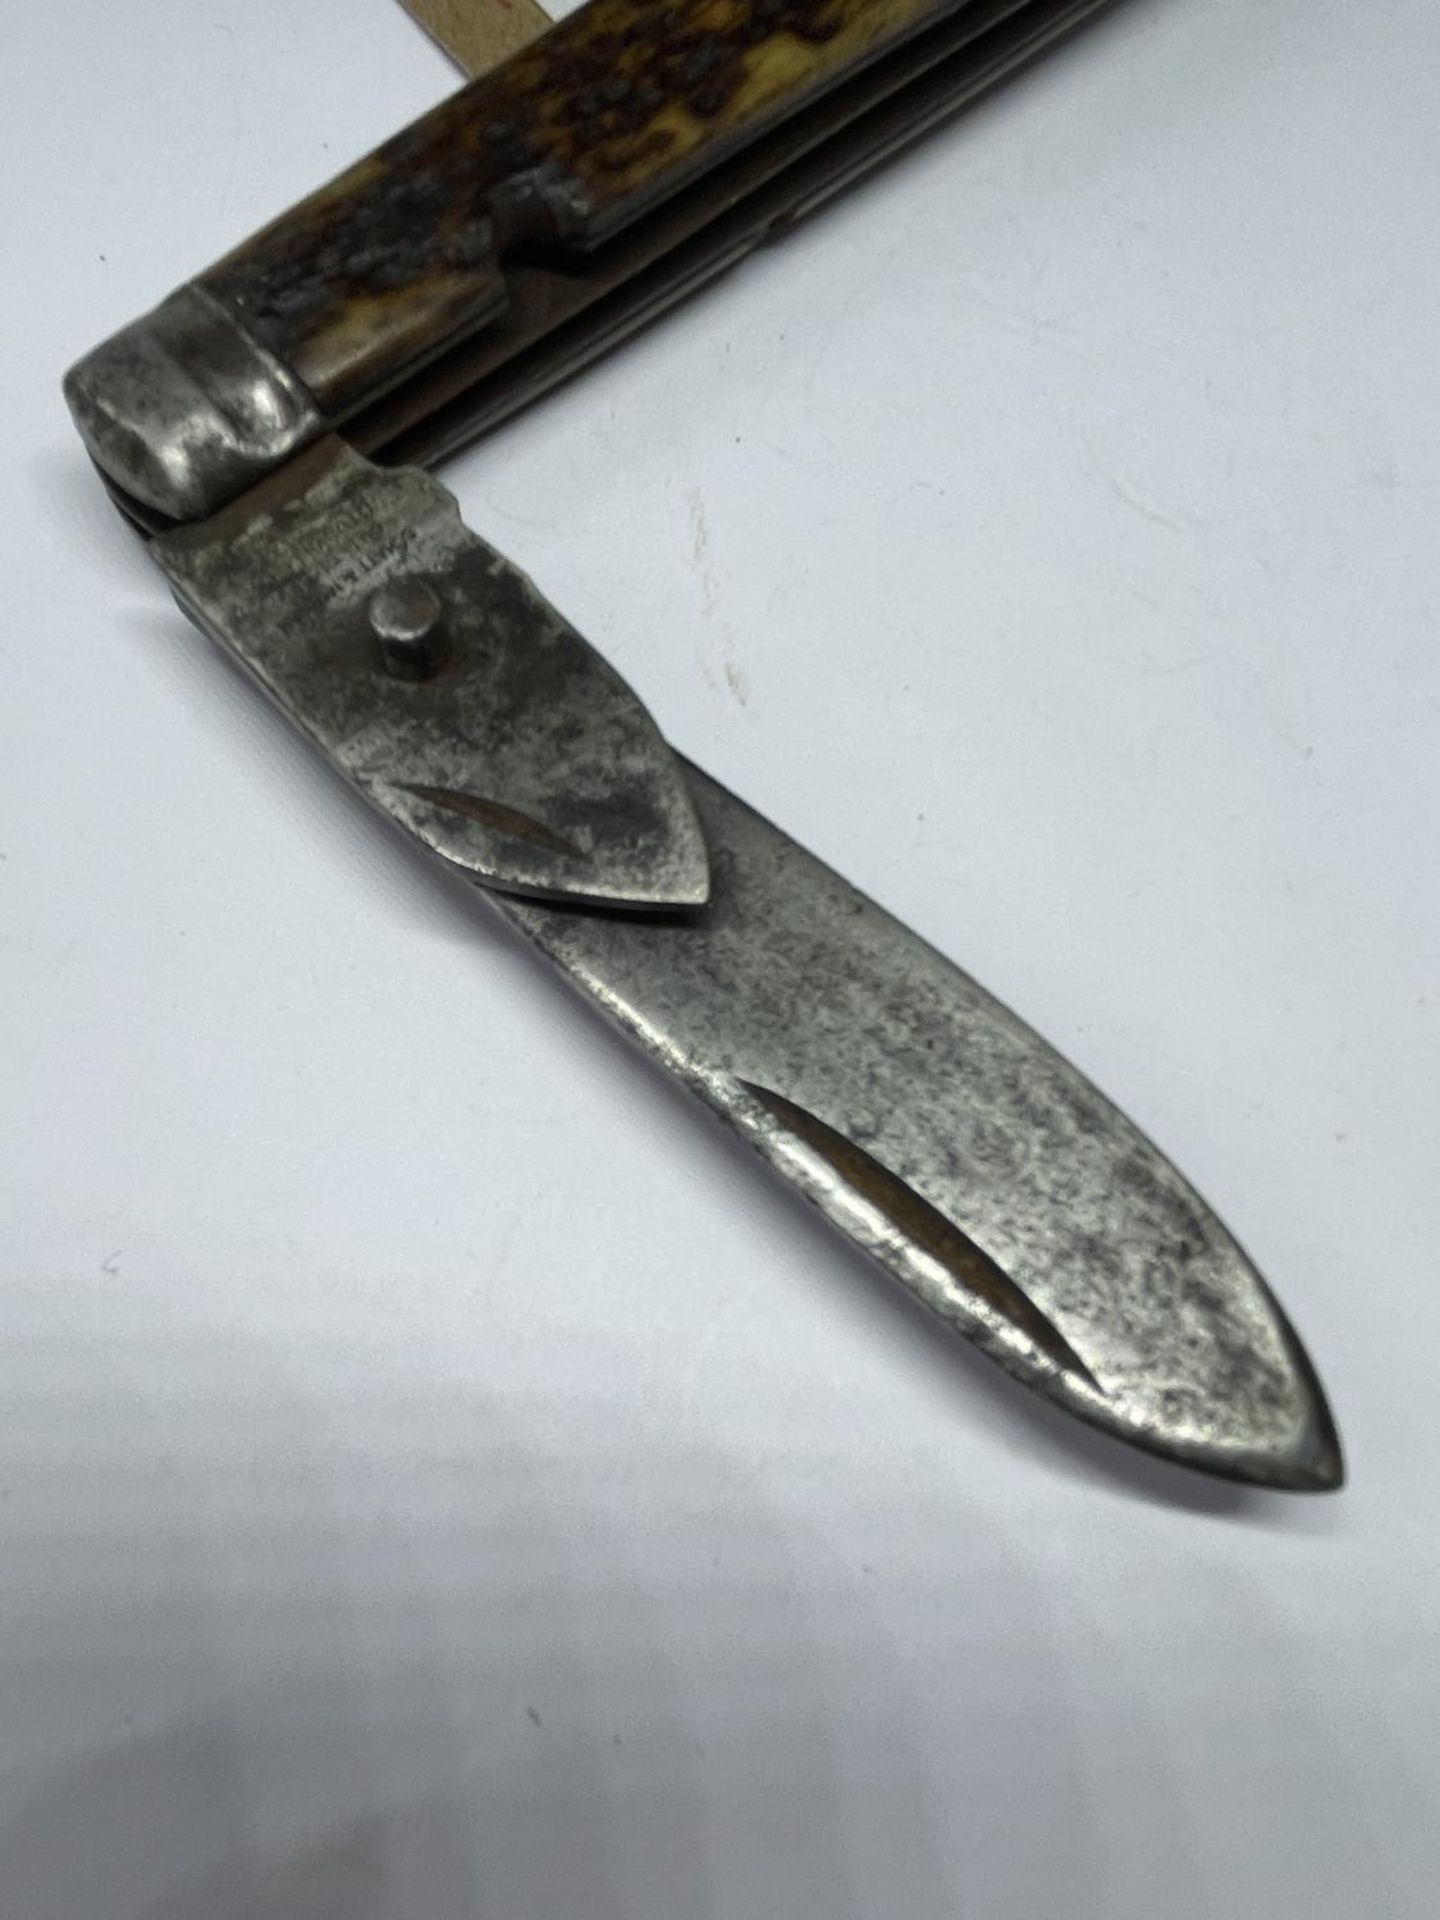 A SHATT AND MORGAN TITUSVILLE POCKET KNIFE - Image 2 of 4